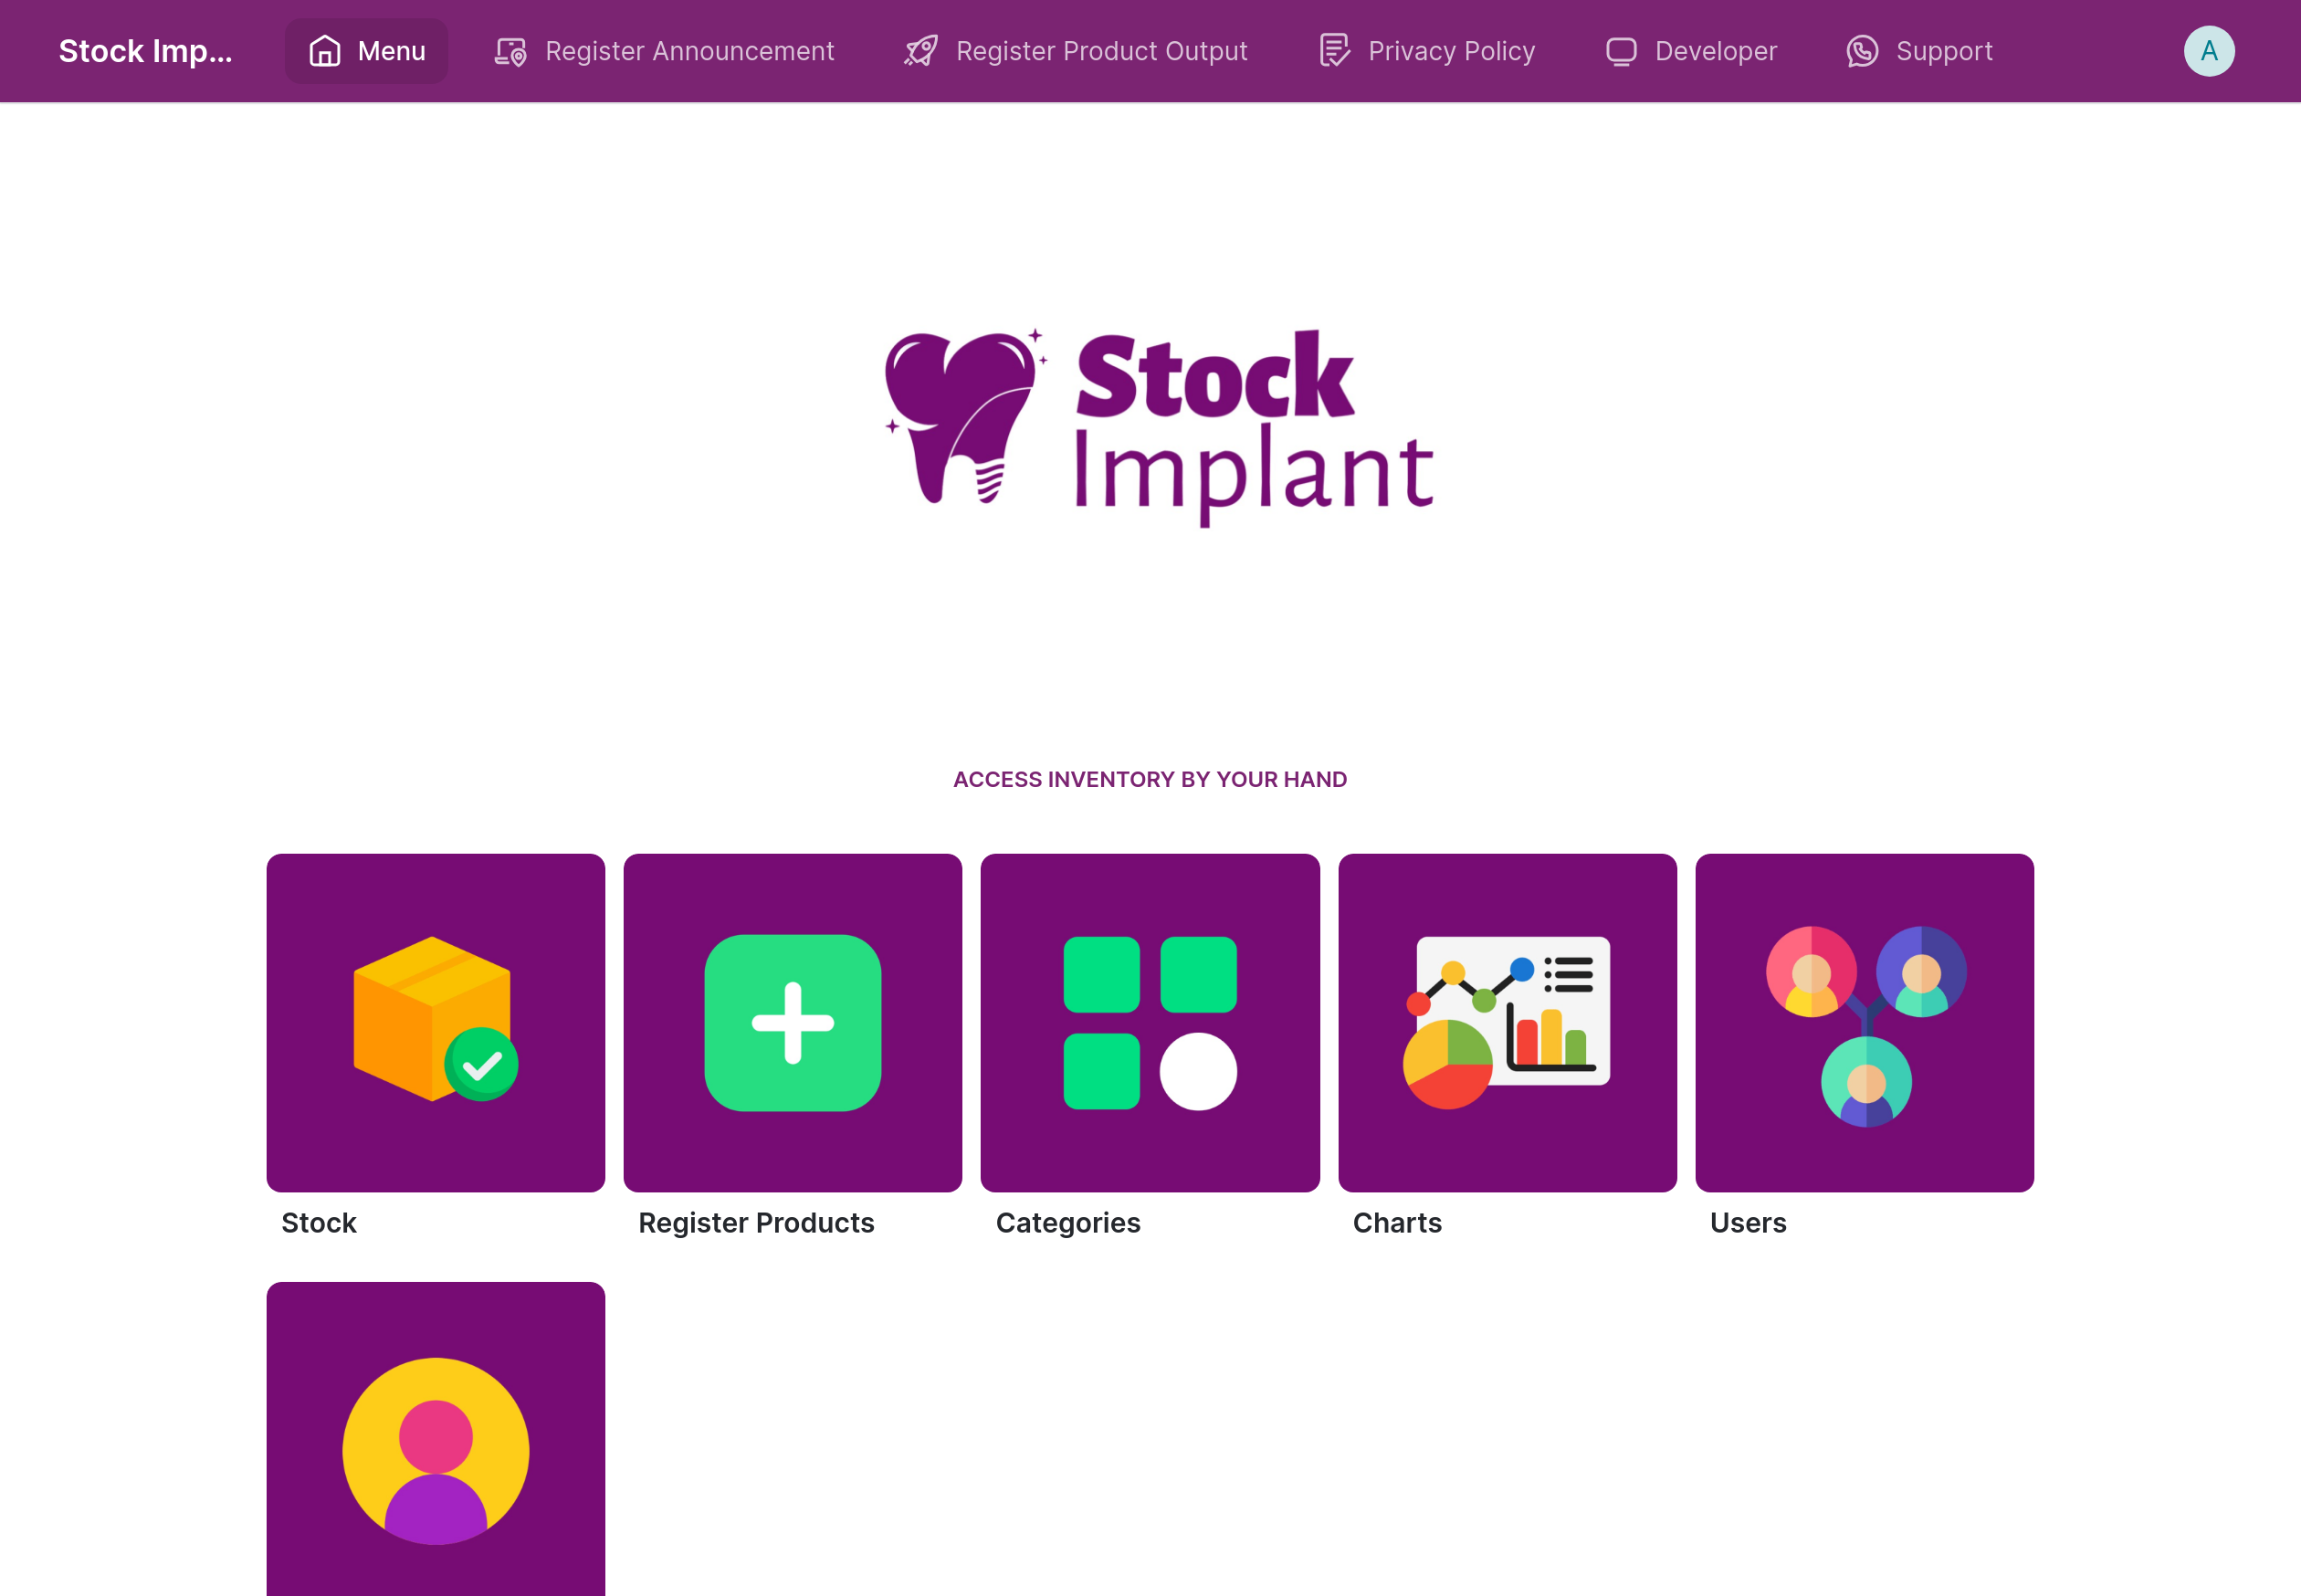 Stock Implant